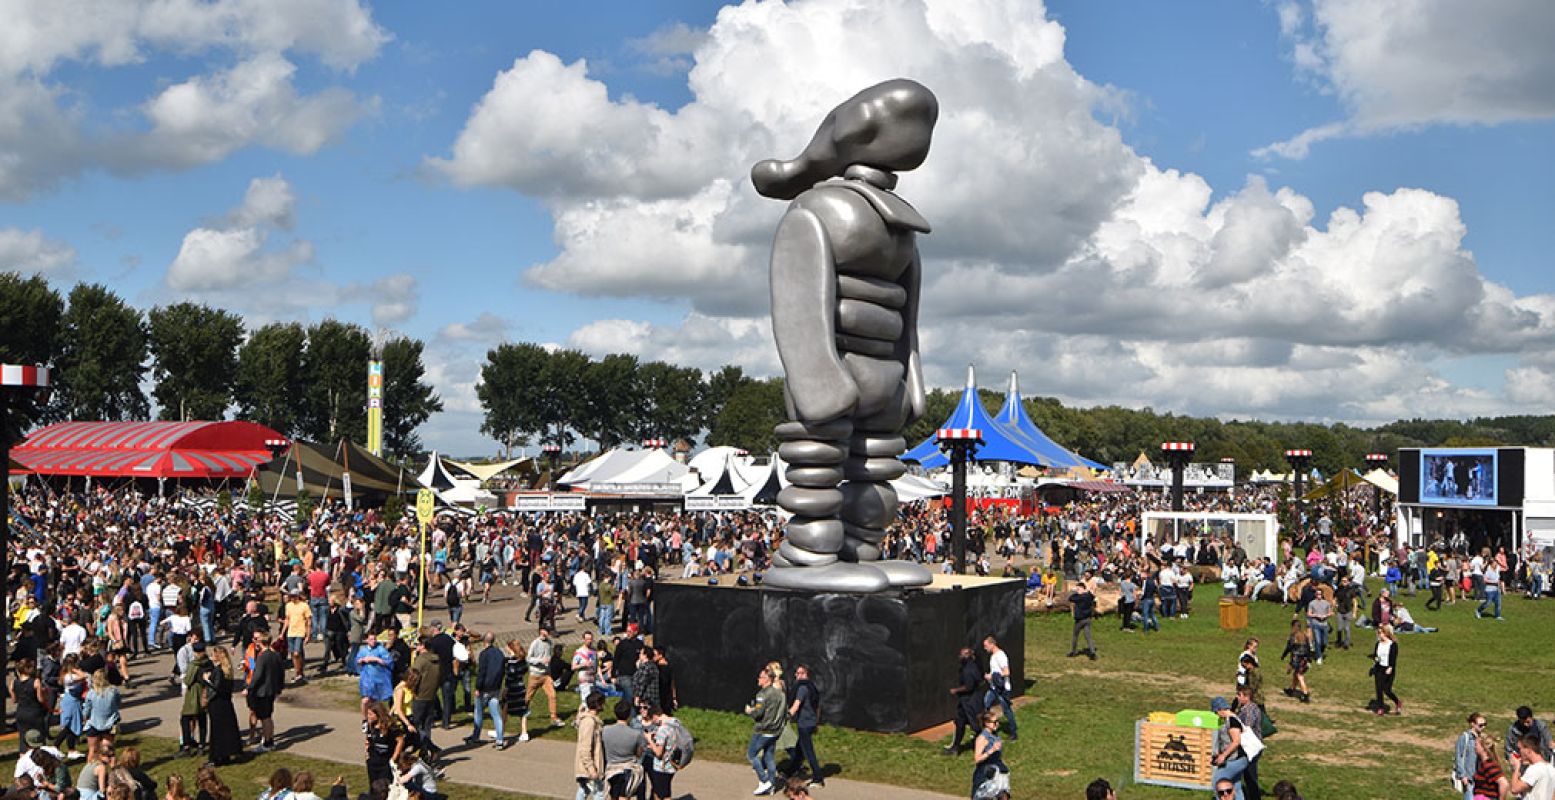 De enorme sculptuur Mikkel van Tom Claassen op festival Lowlands in 2017. Nu staat hij voor Museum Prinsenhof in Delft. Foto: Lucas Gmelig